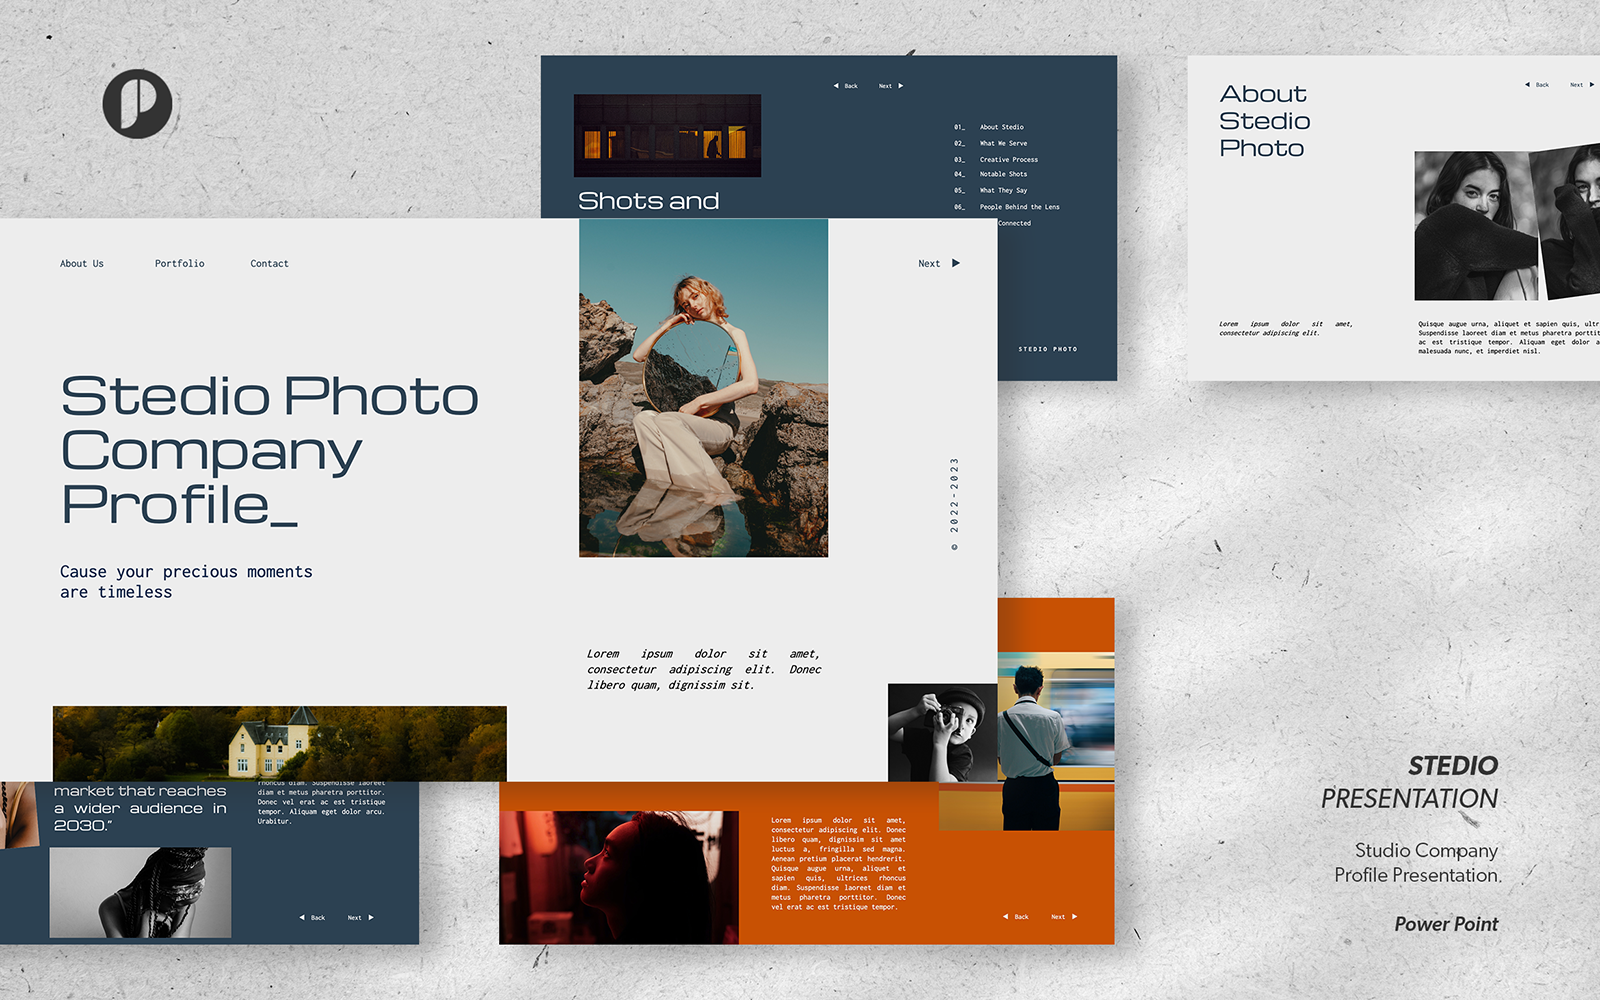 Stedio – white aesthetic minimalist studio company profile presentation template